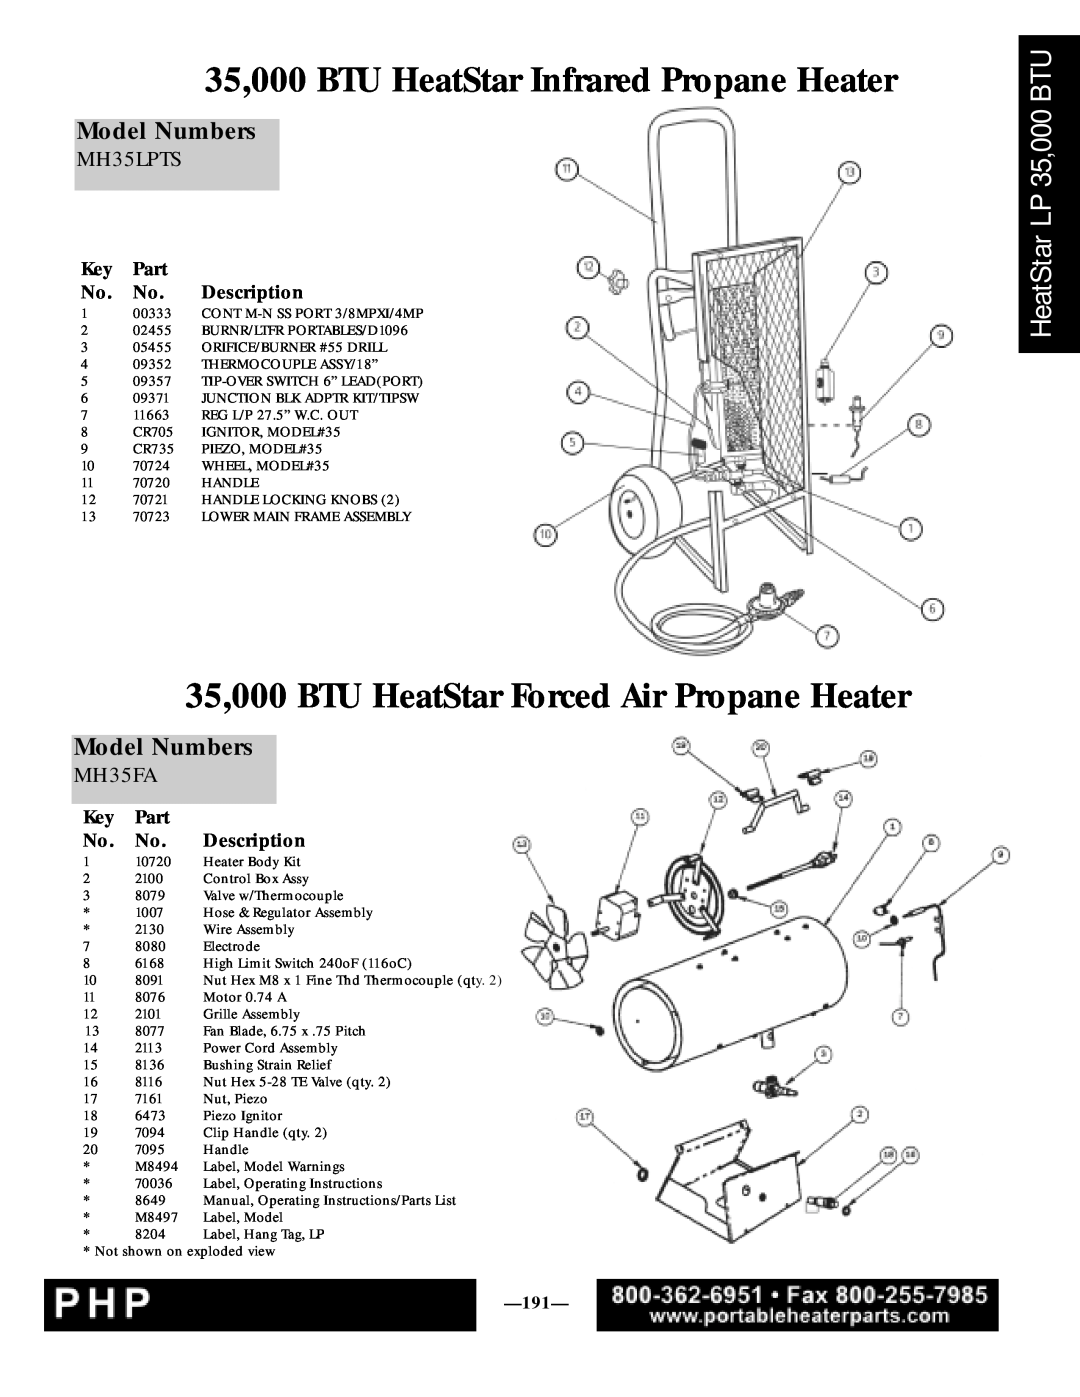 Enerco MH35LPTS manual 35,000 BTU HeatStar Infrared Propane Heater, 35,000 BTU HeatStar Forced Air Propane Heater, MH35FA 